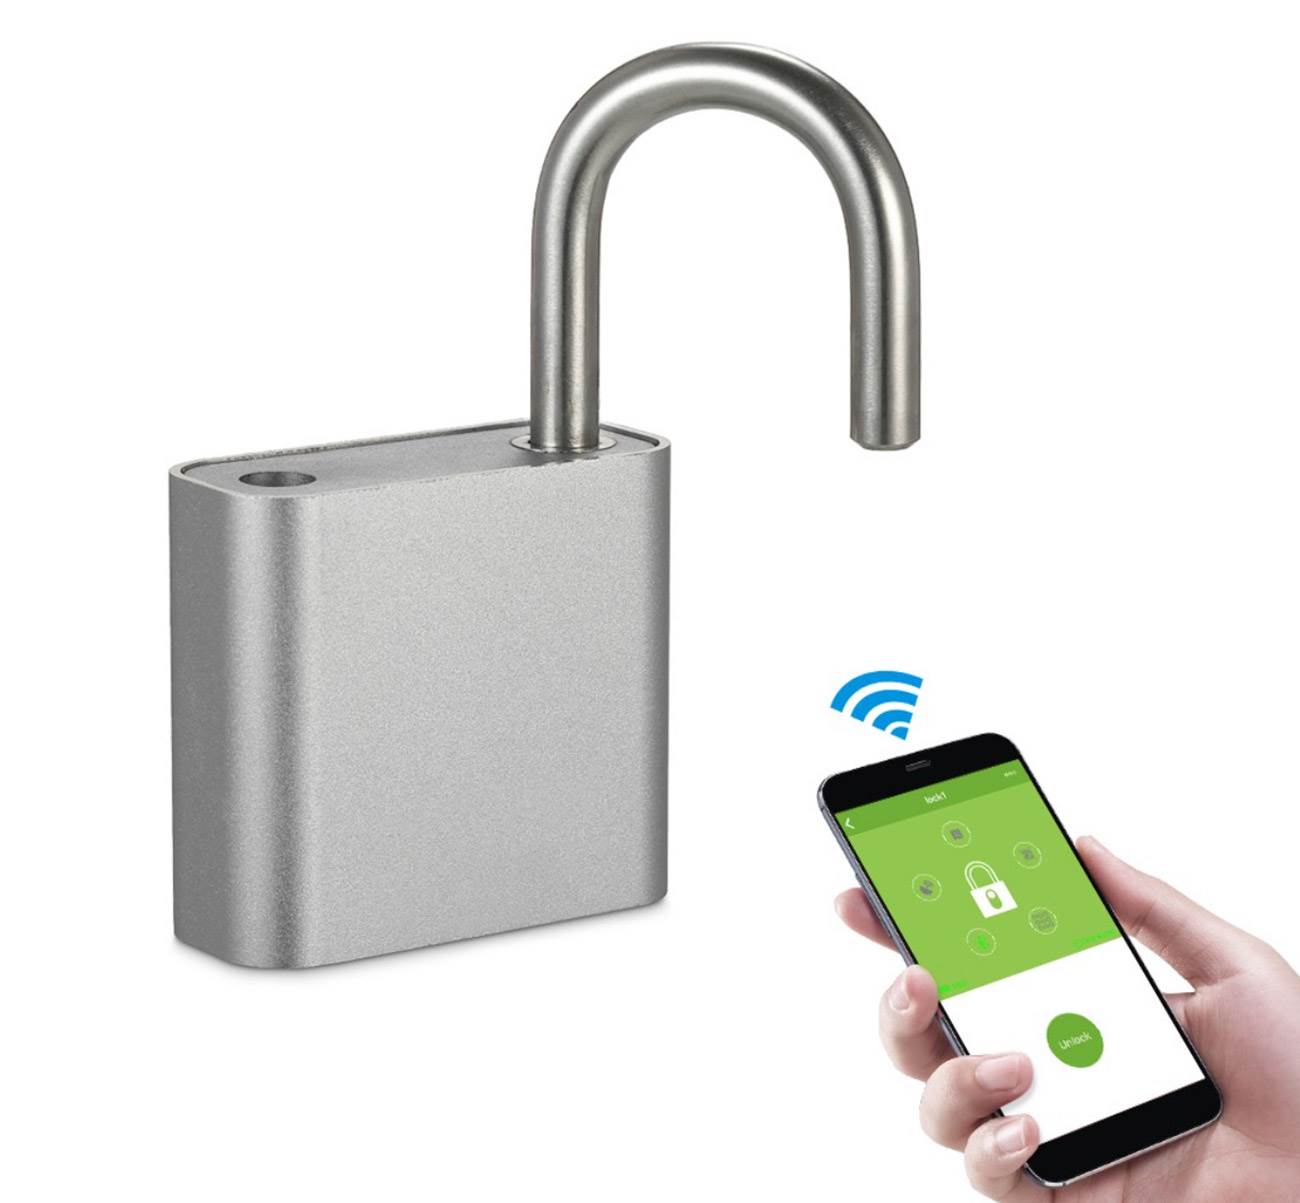 T Smart Keyless Lock - kłódka, którą odblokujesz iPhone?m ciekawostki T Smart Keyless Lock, kłódka sterowana iPhone, kłódka  No i przyszedł czas na kolejny wpis w którym mamy dla Was specjalny produkt w bardzo atrakcyjnej cenie. Tym razem jest to kłódka otwierana smartfonem. klodka 1